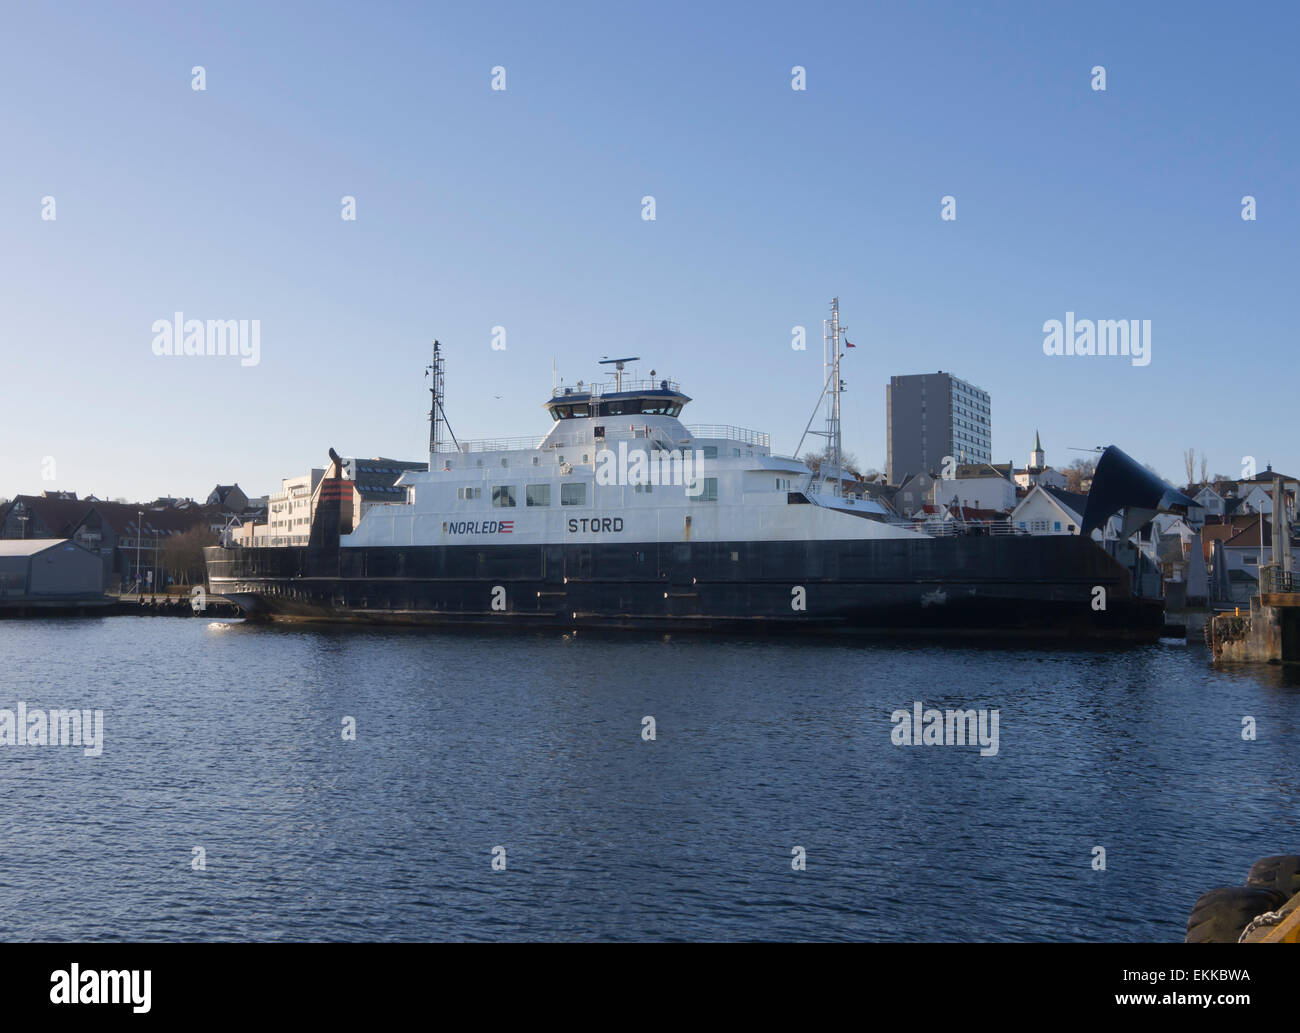 Traversier de passagers et voiture Stord dans le port de Stavanger en Norvège, prêt à transporter des passagers dans les fjords Banque D'Images